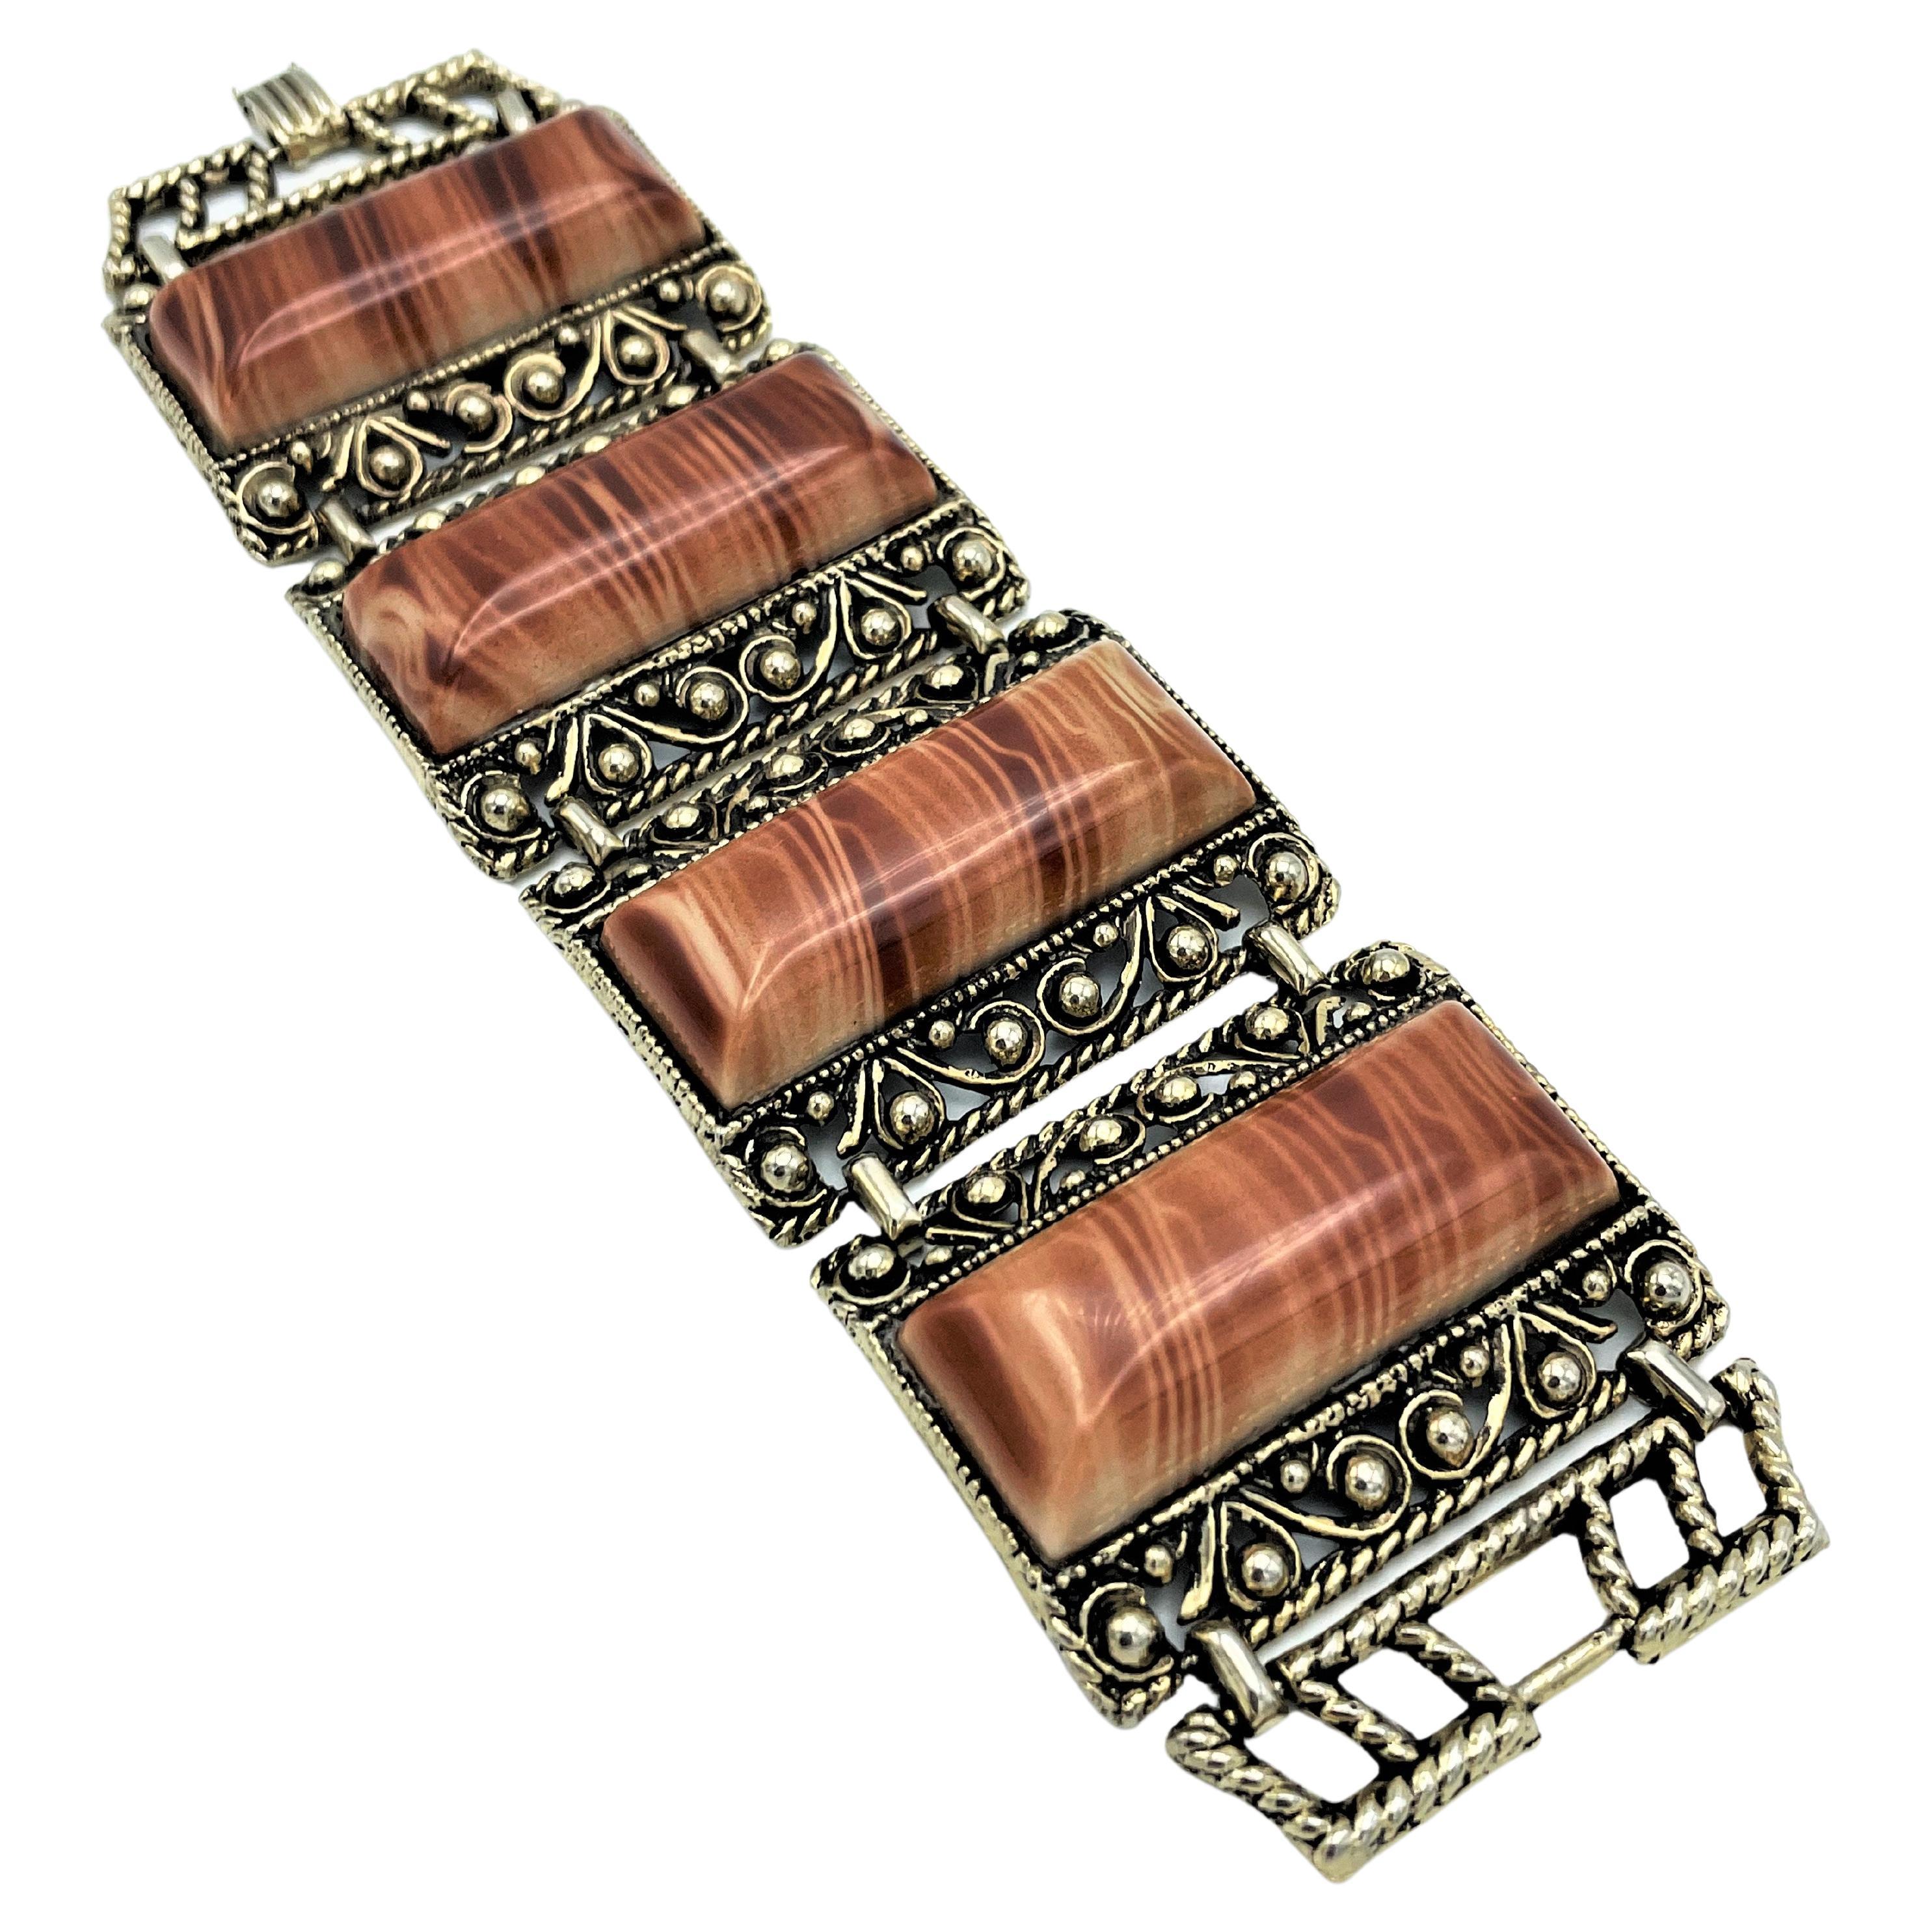 Über
Flexibles Armband bestehend aus 4 marmorierten Kunststoffteilen, fein eingefasst in feine Metallarbeiten; USA 1980er Jahre
Messung
Länge  19 cm 
Breite     5 cm 
Tief      1 cm 
Eigenschaften
- 4 bewegliche Teile, je 5 cm x 3,8 cm
- MATERIAL